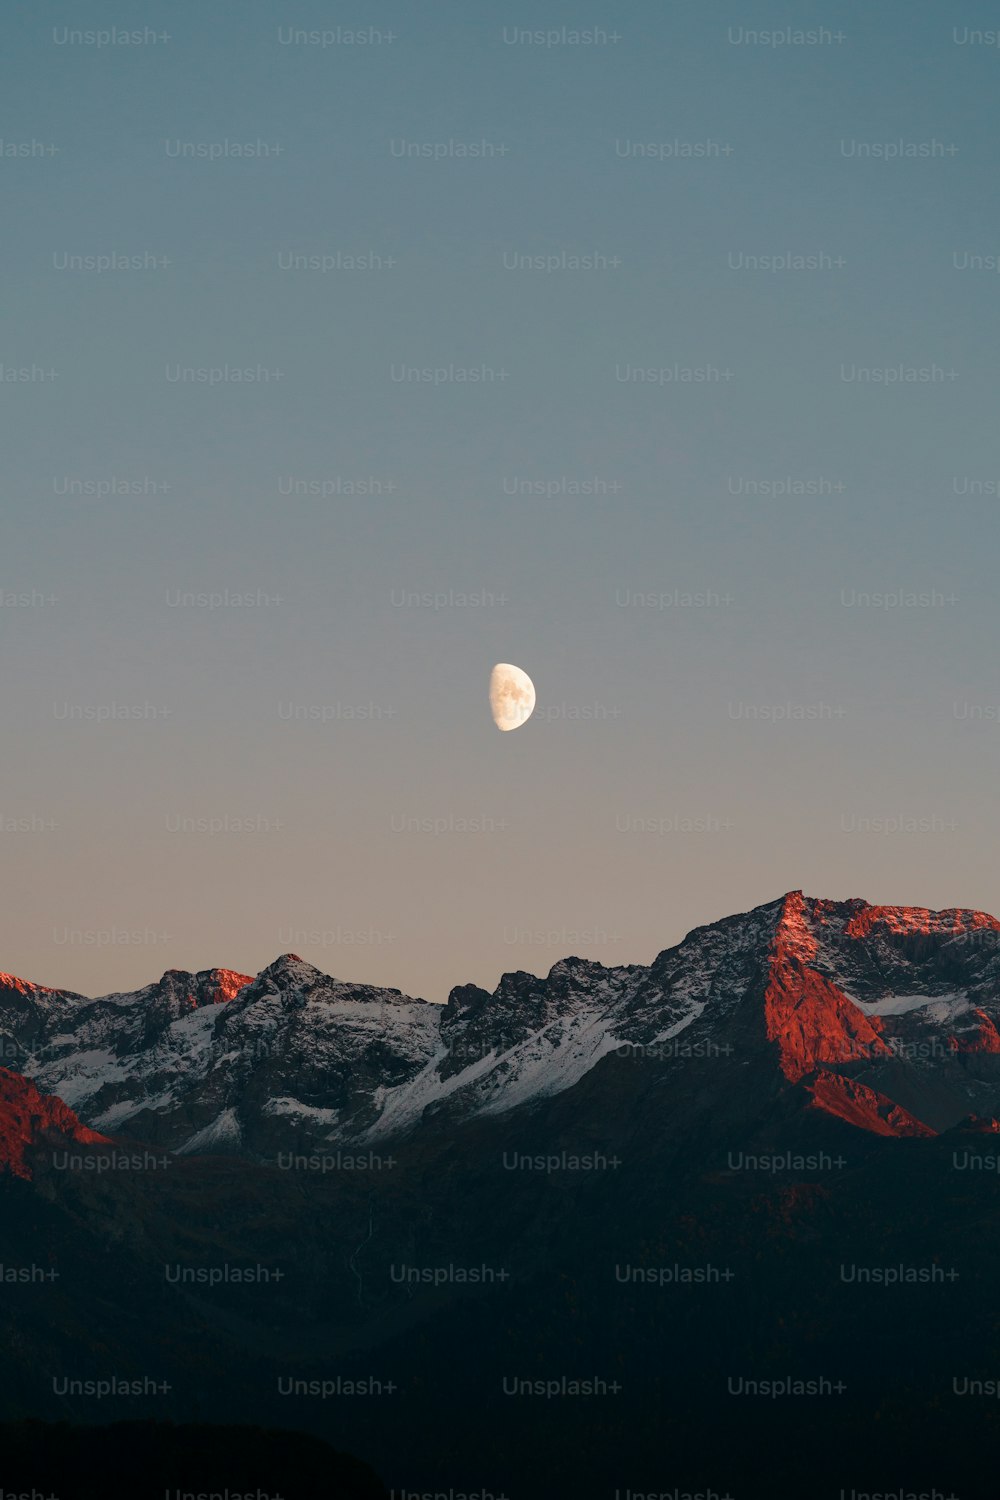 La luna se está poniendo sobre una cadena montañosa